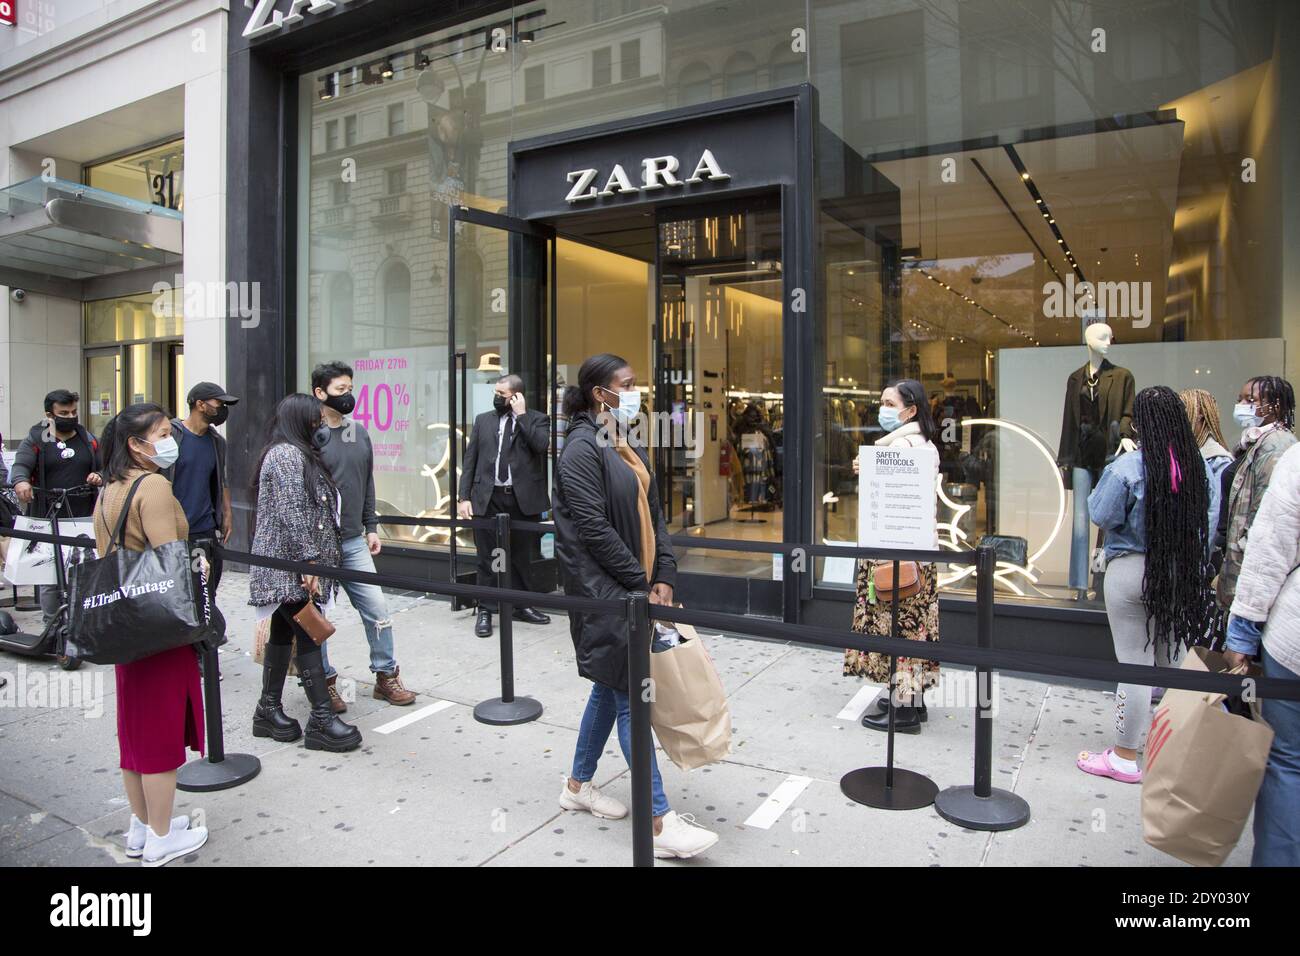 Die Menschen standen, angemessen sozial distanziert, vor einem ZARA-Laden  in Manhattan, um am Black Friday 2020 während der Covid-19-Pandemie  einzukaufen Stockfotografie - Alamy